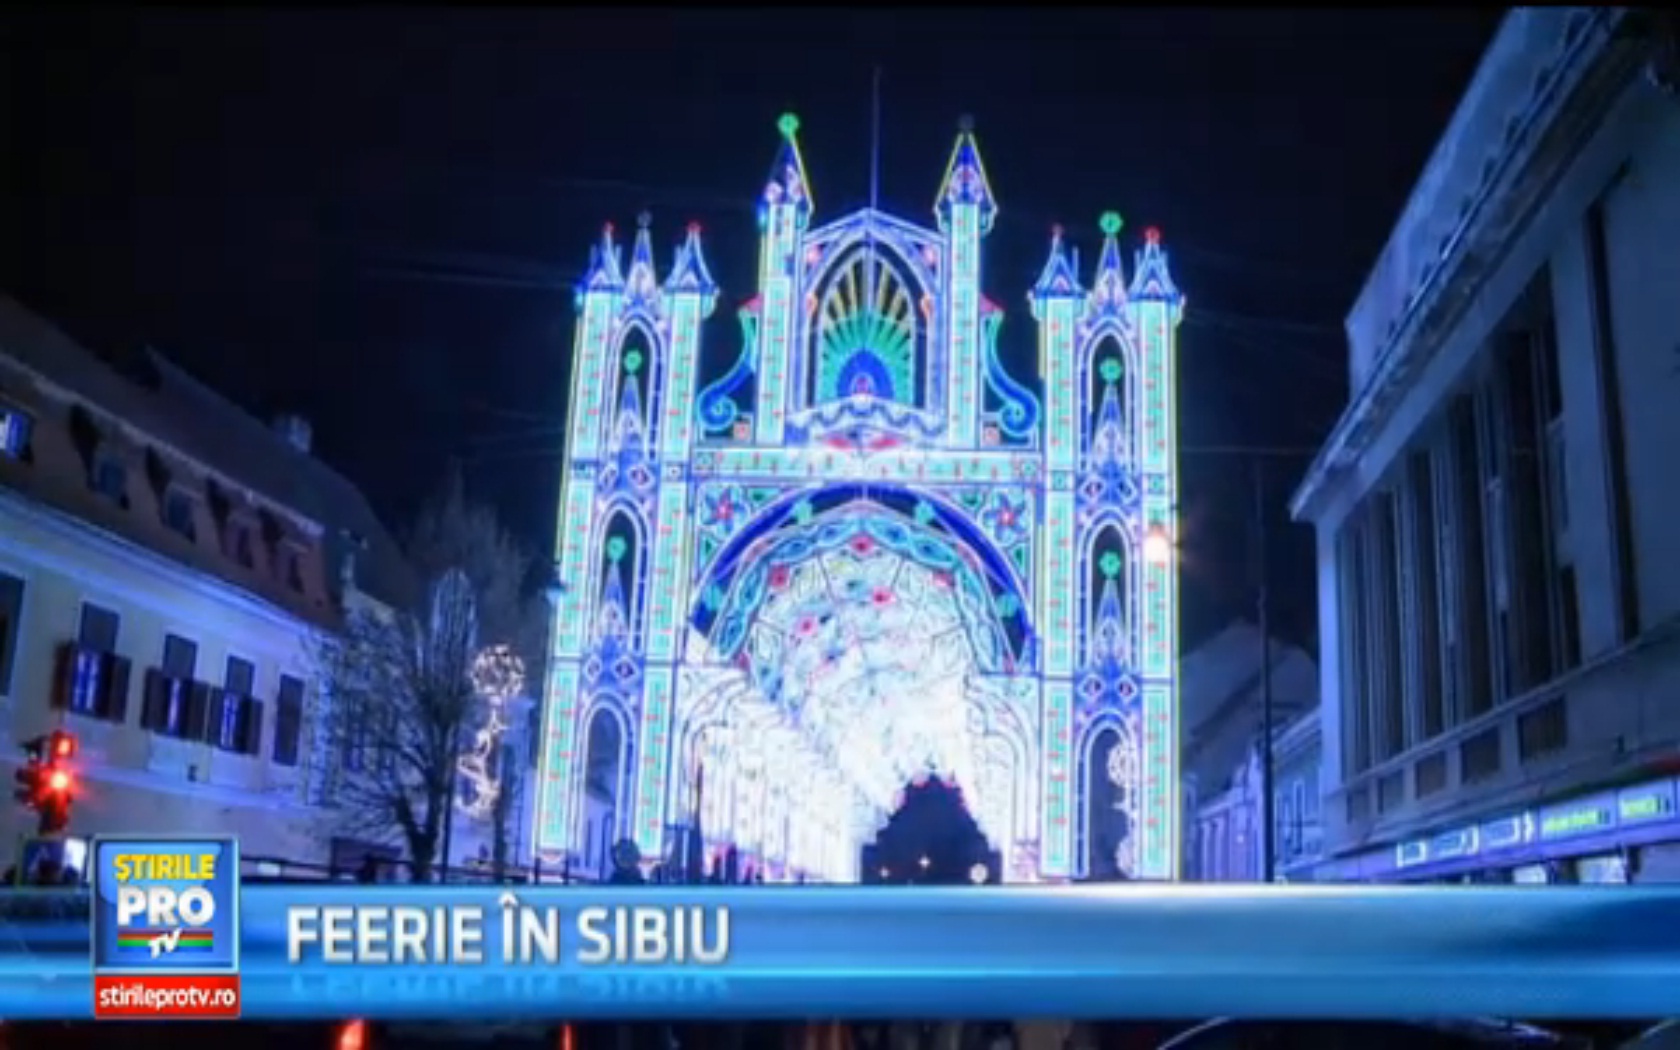 Tunel de lumini in centrul Sibiului. Au fost aprinse 55.000 de beculete, pe o instalatie de 40 de m